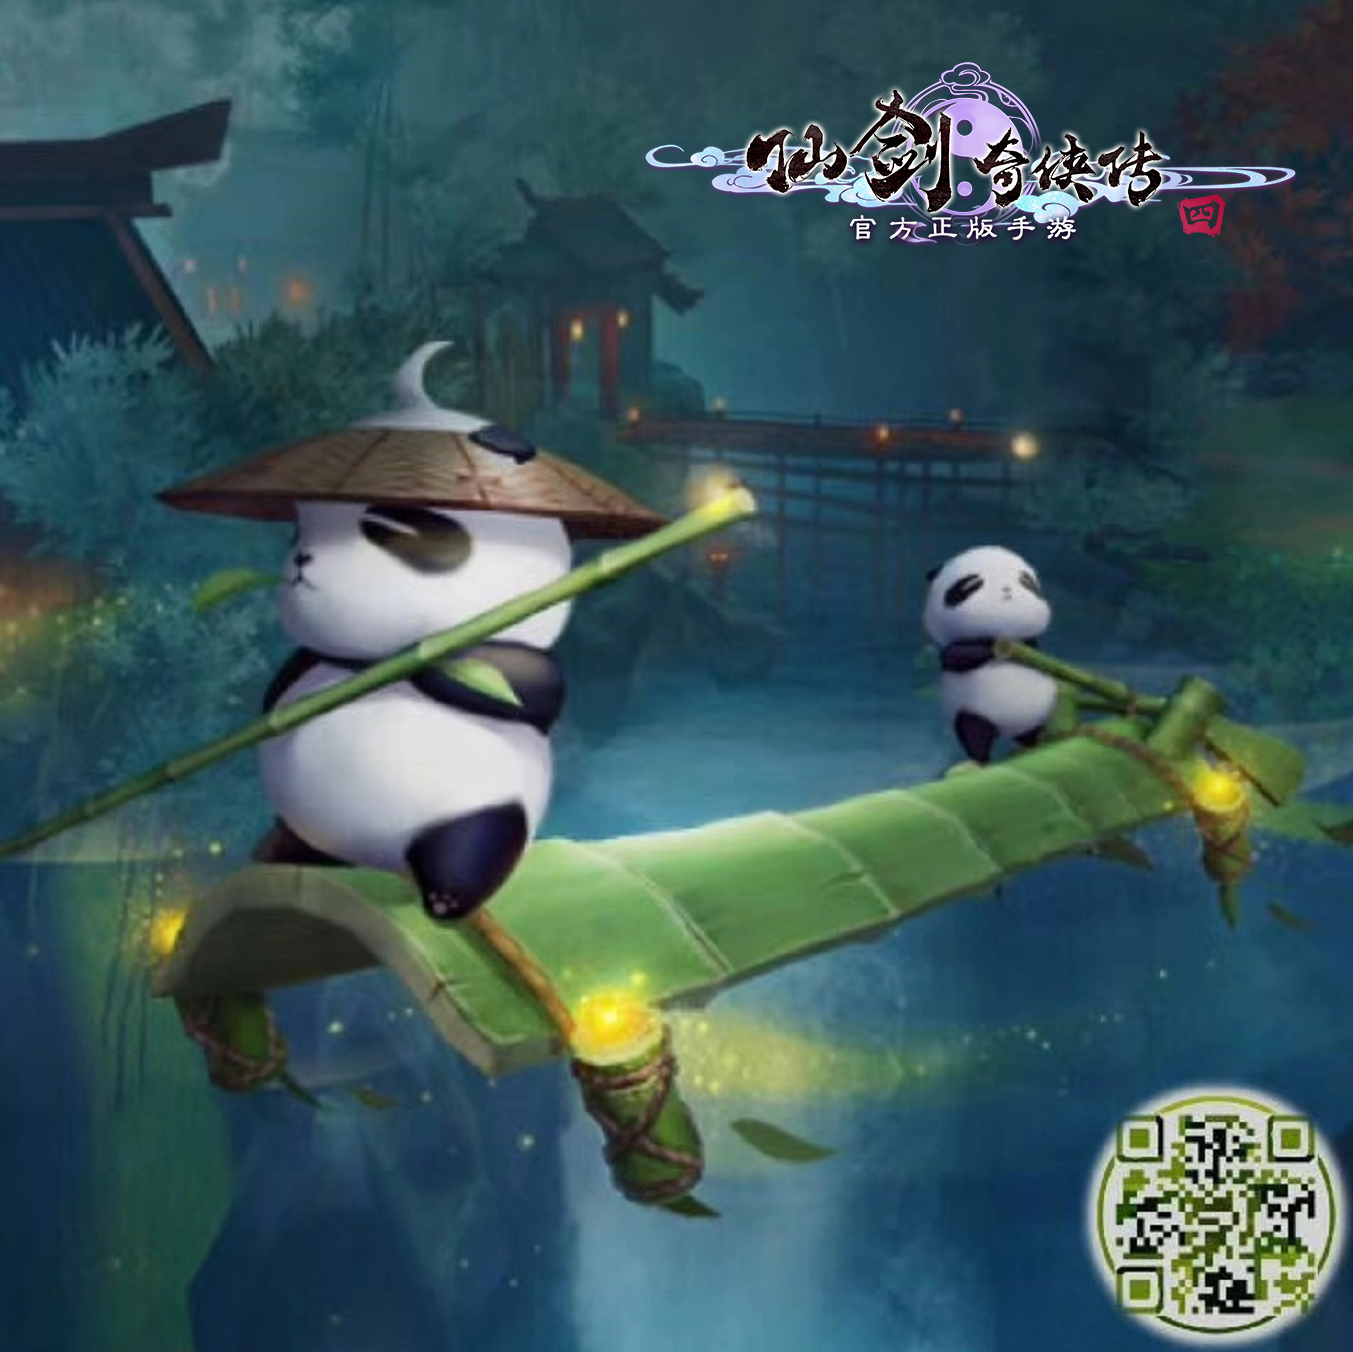 与团团来一次亲密接触 QQ-AR携手仙剑4手游解锁国宝熊猫